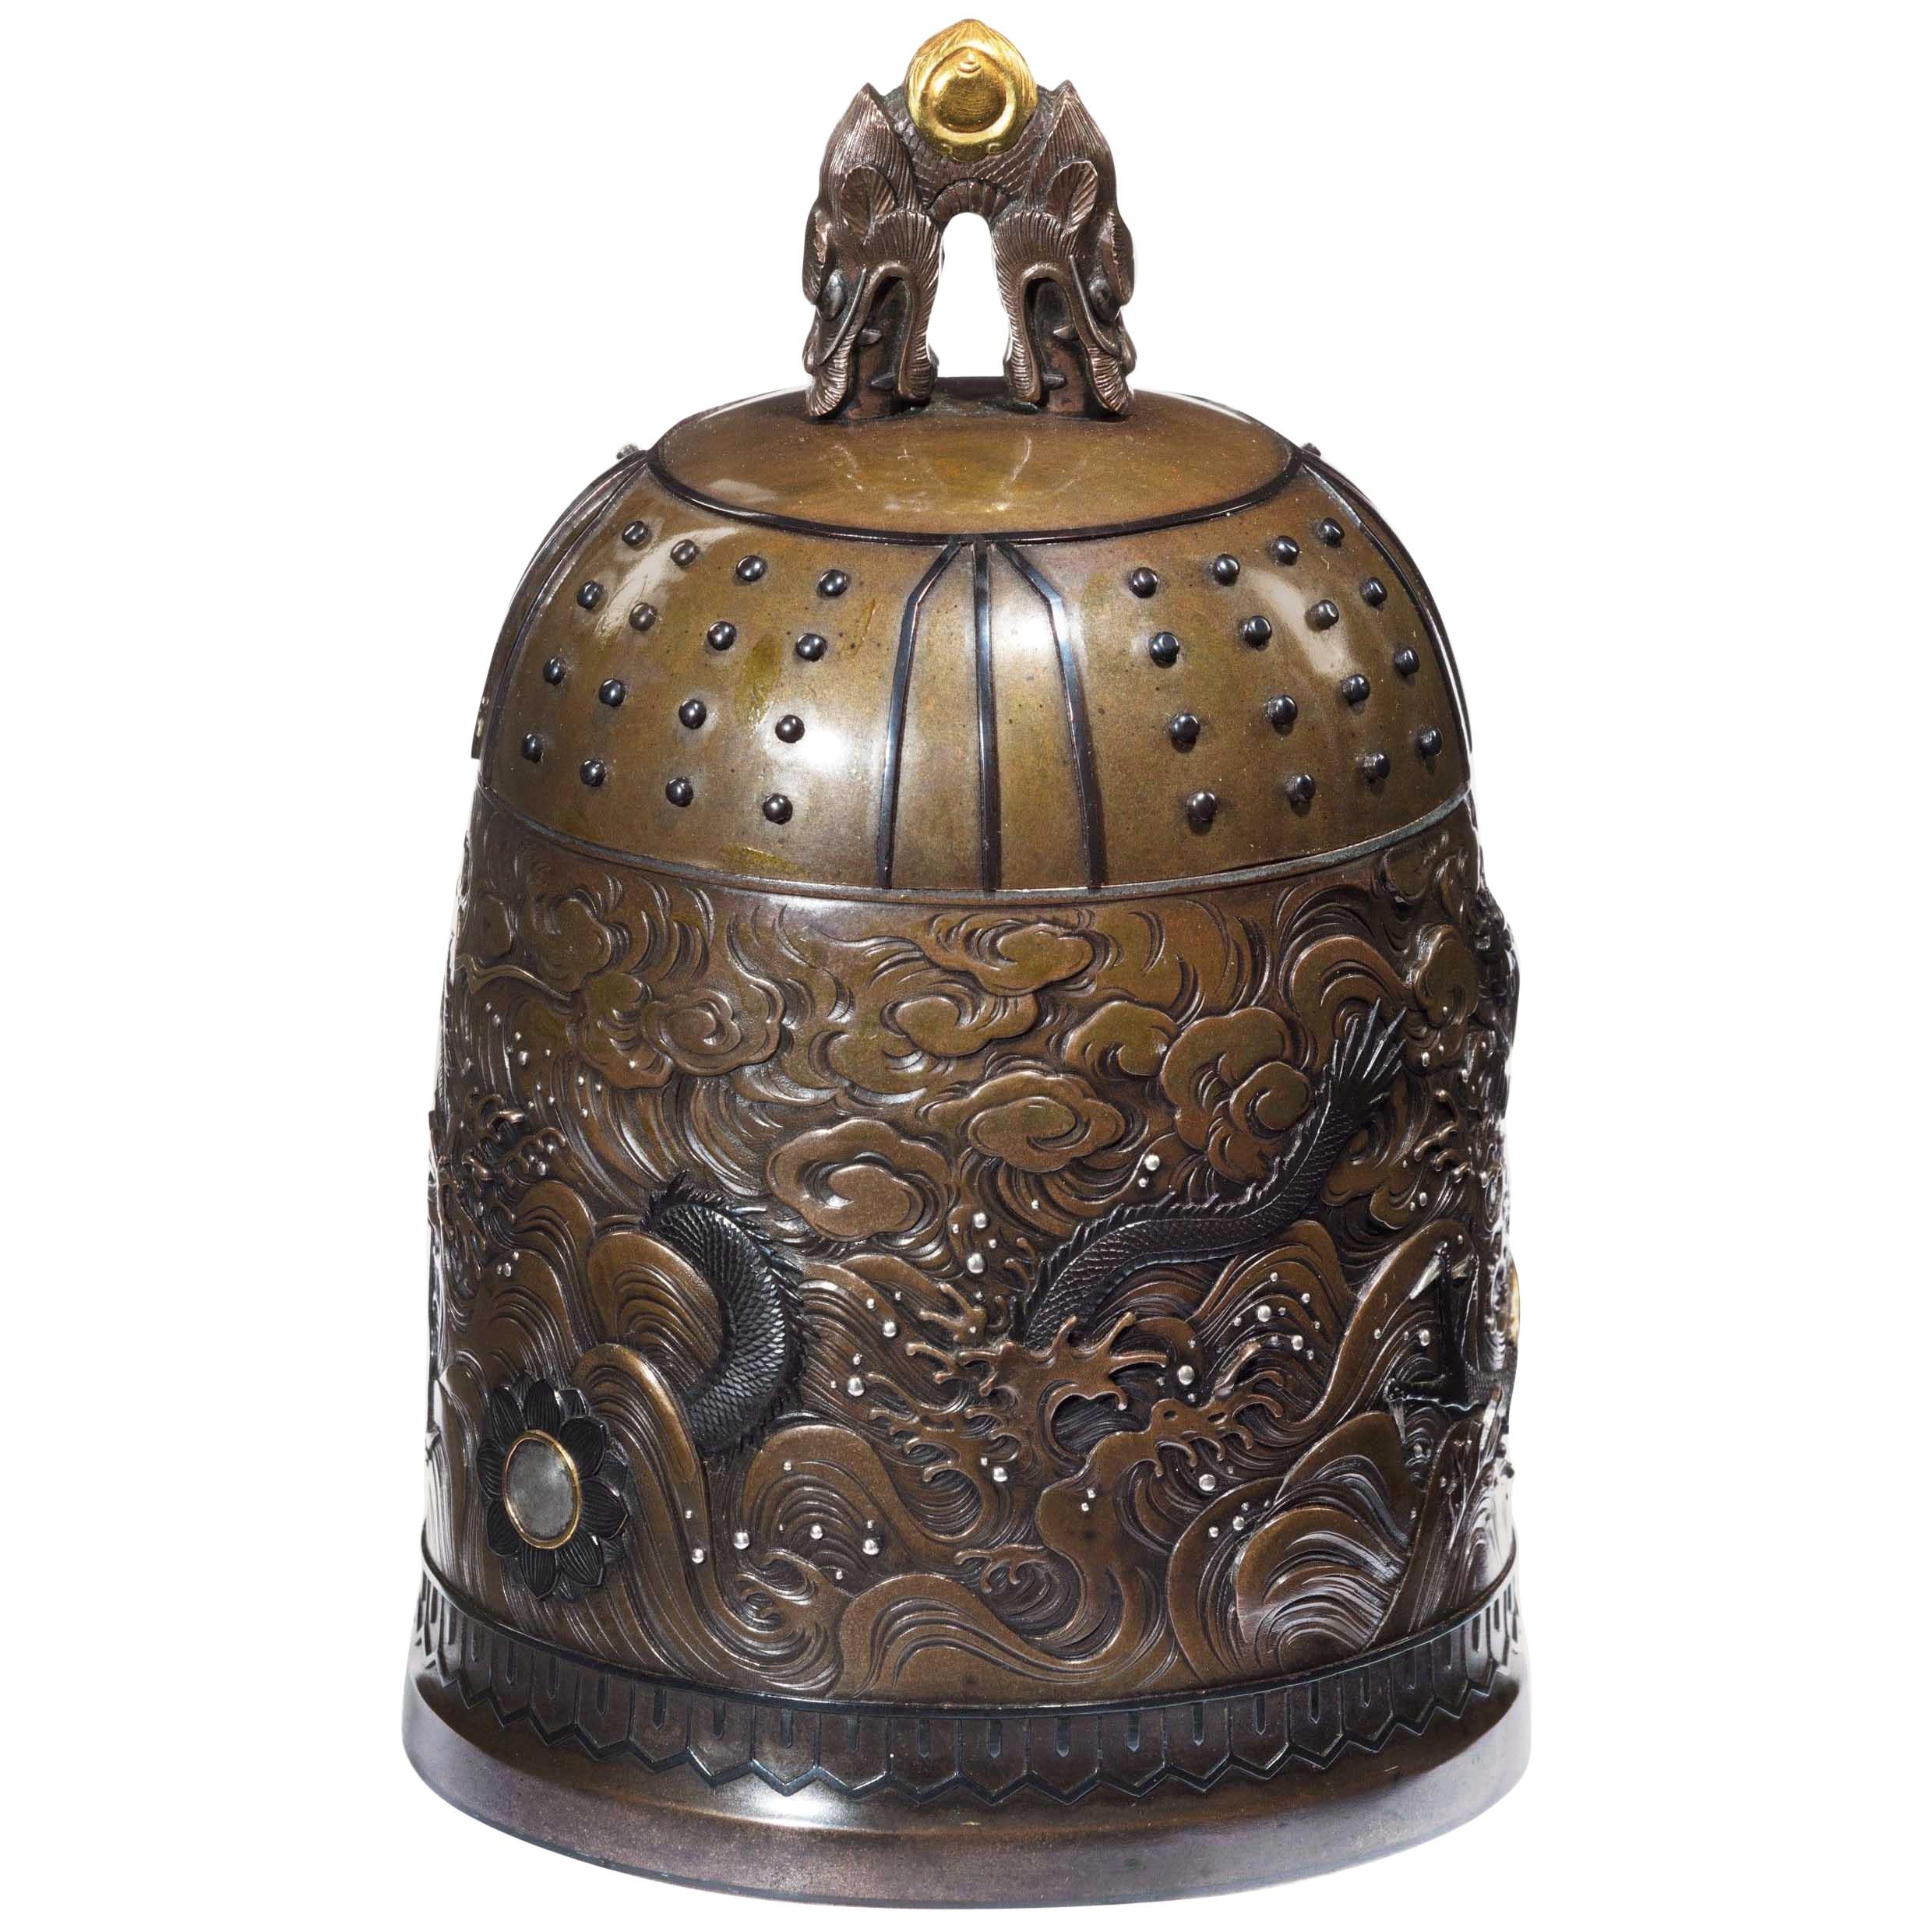 Meiji Period Bell Casket by the Nogowa Foundary